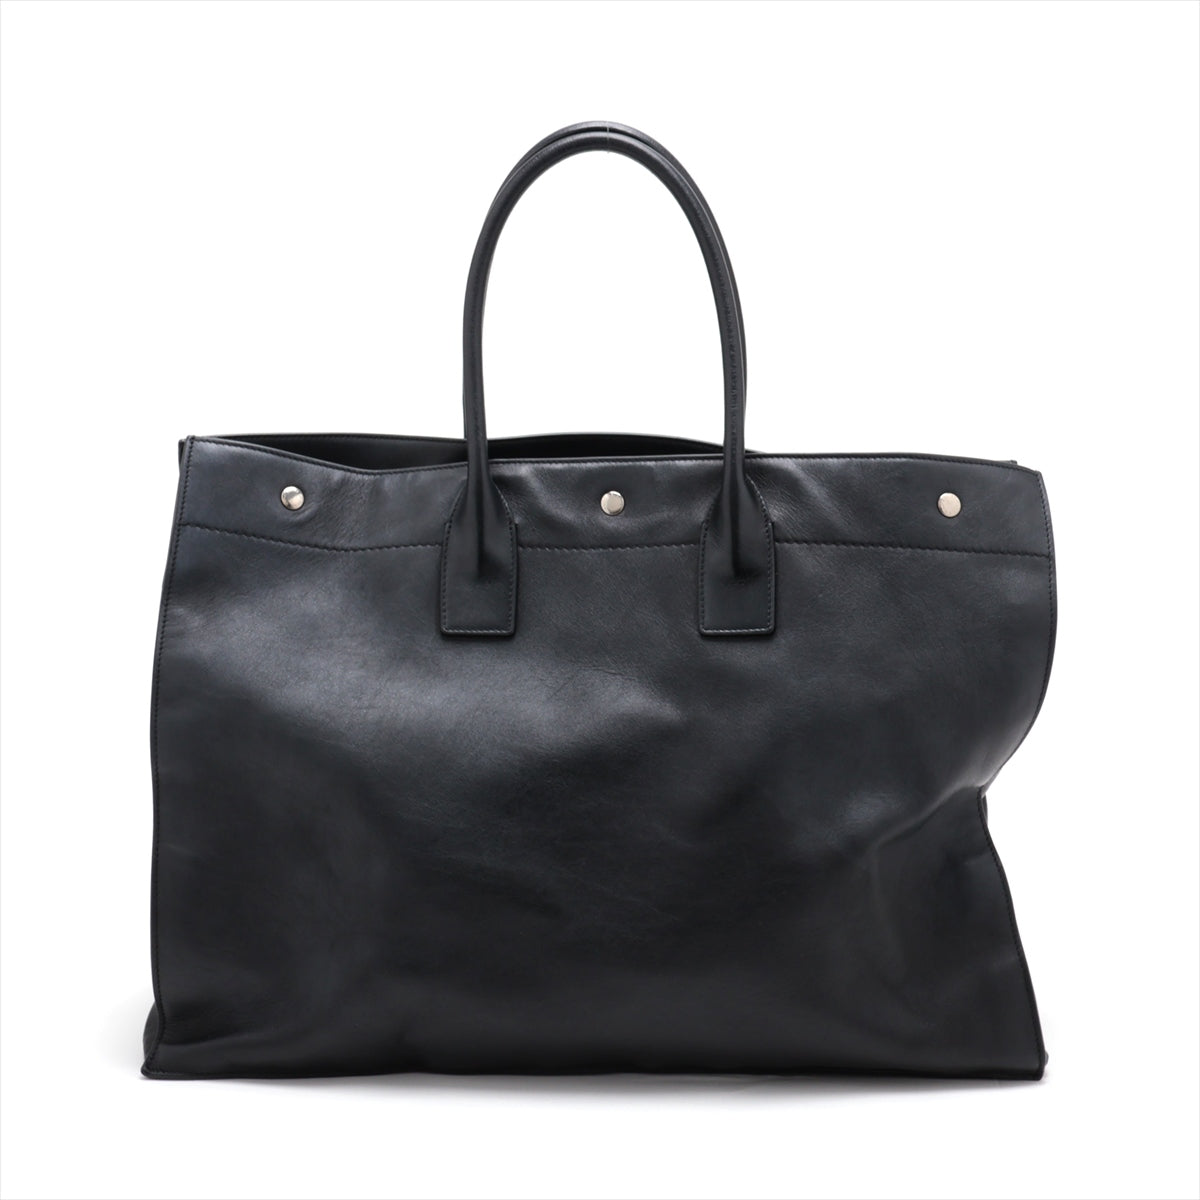 Saint Laurent Paris Rive Gauche Leather Tote bag Black 587273